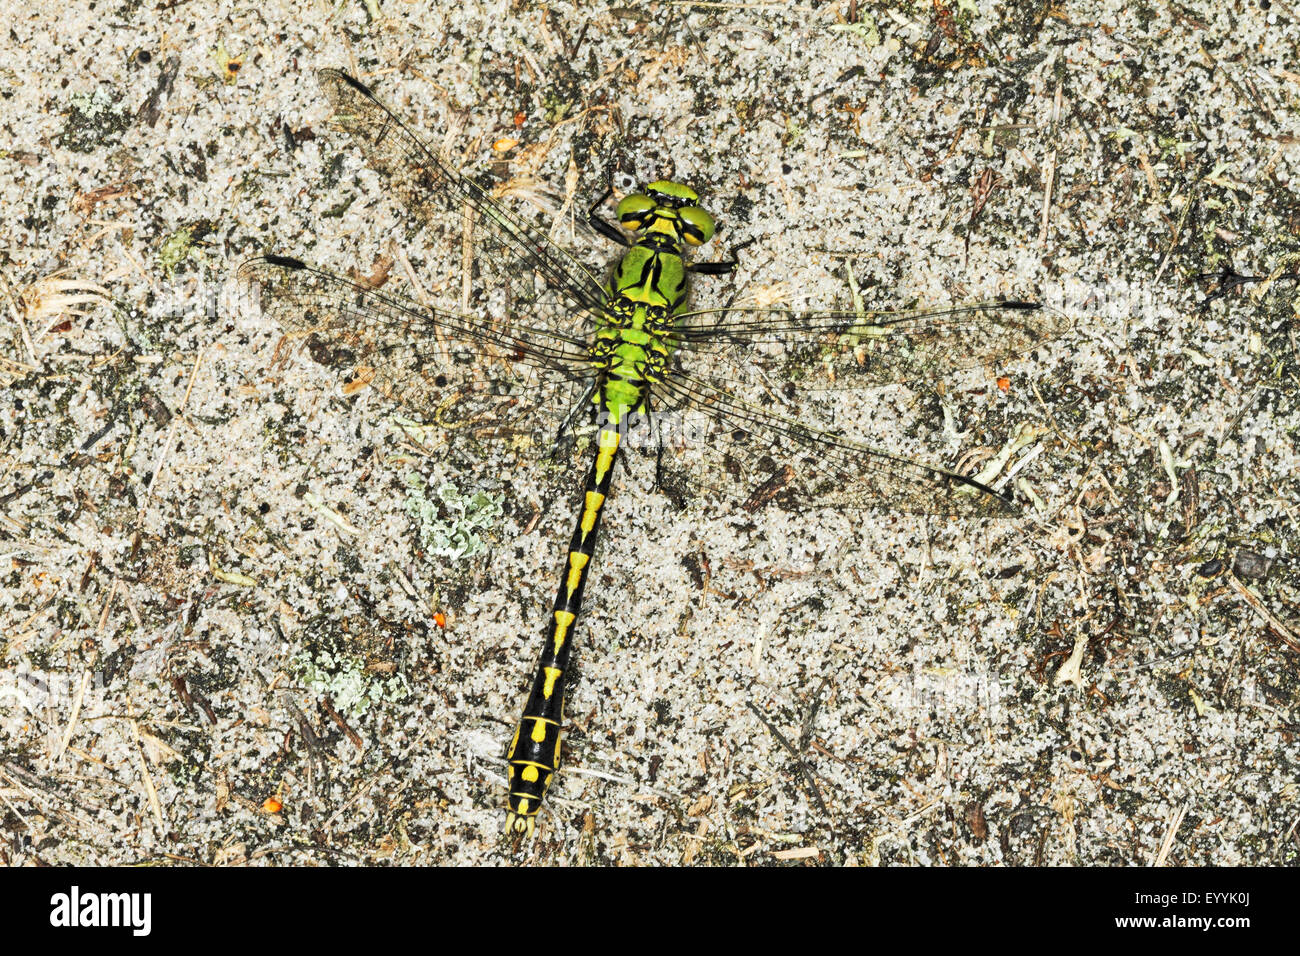 Libélula, serpentina verde (Ophiogomphus serpentinus Snaketail, Ophiogomphus cecilia), macho, Alemania Foto de stock